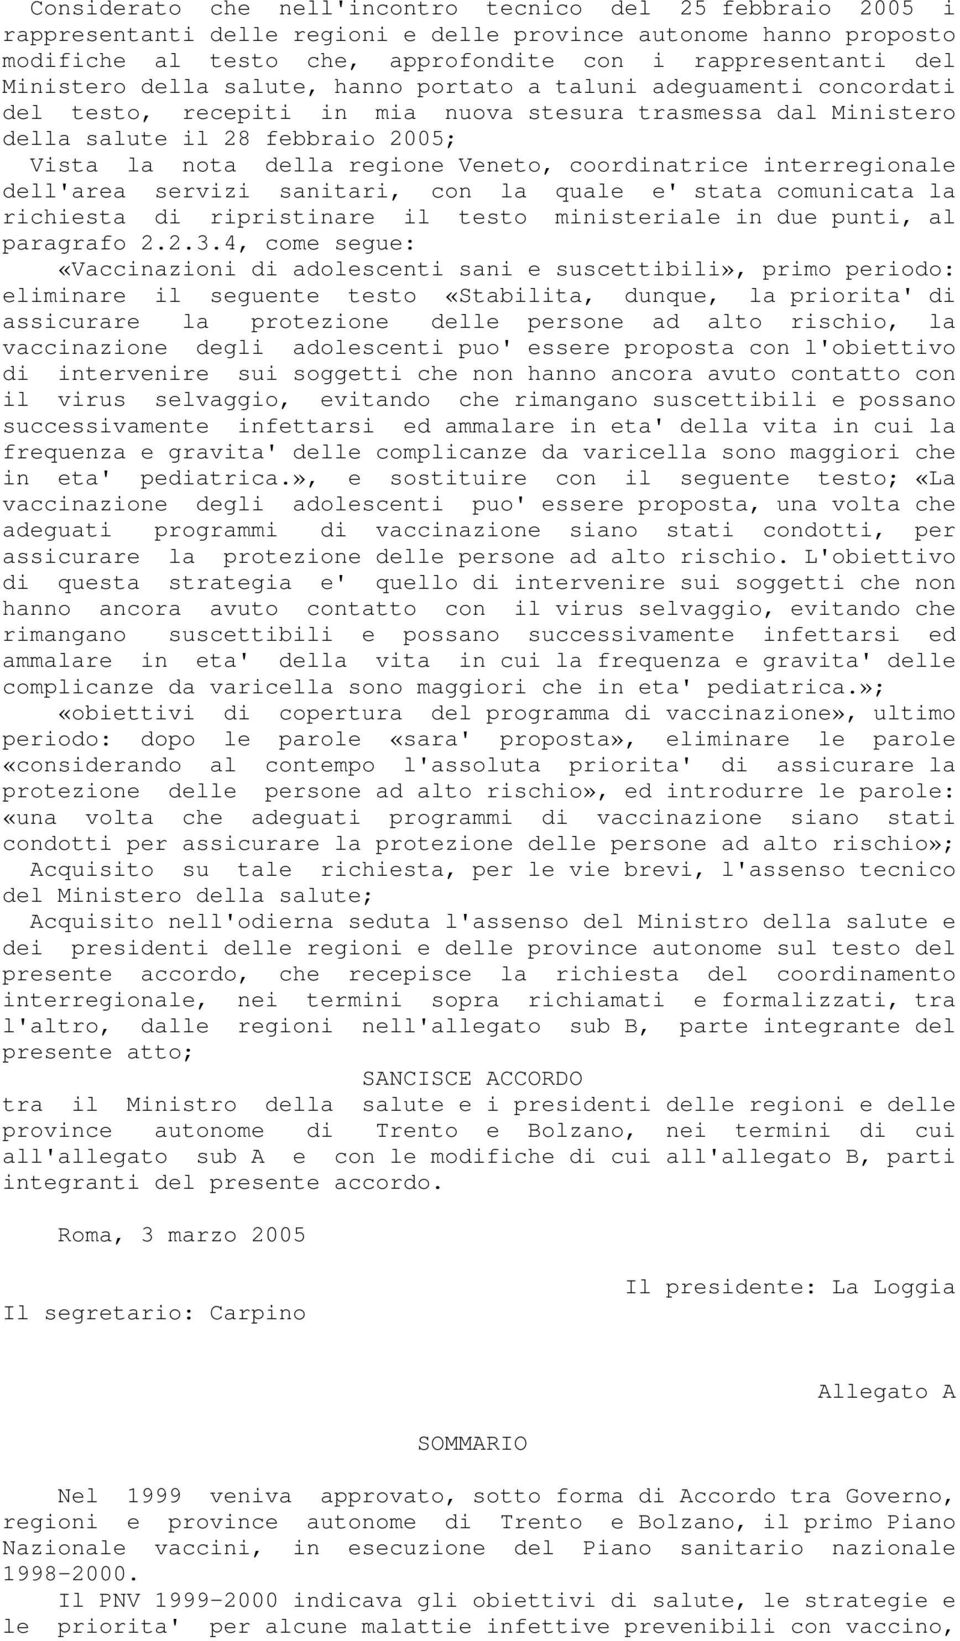 Veneto, coordinatrice interregionale dell'area servizi sanitari, con la quale e' stata comunicata la richiesta di ripristinare il testo ministeriale in due punti, al paragrafo 2.2.3.